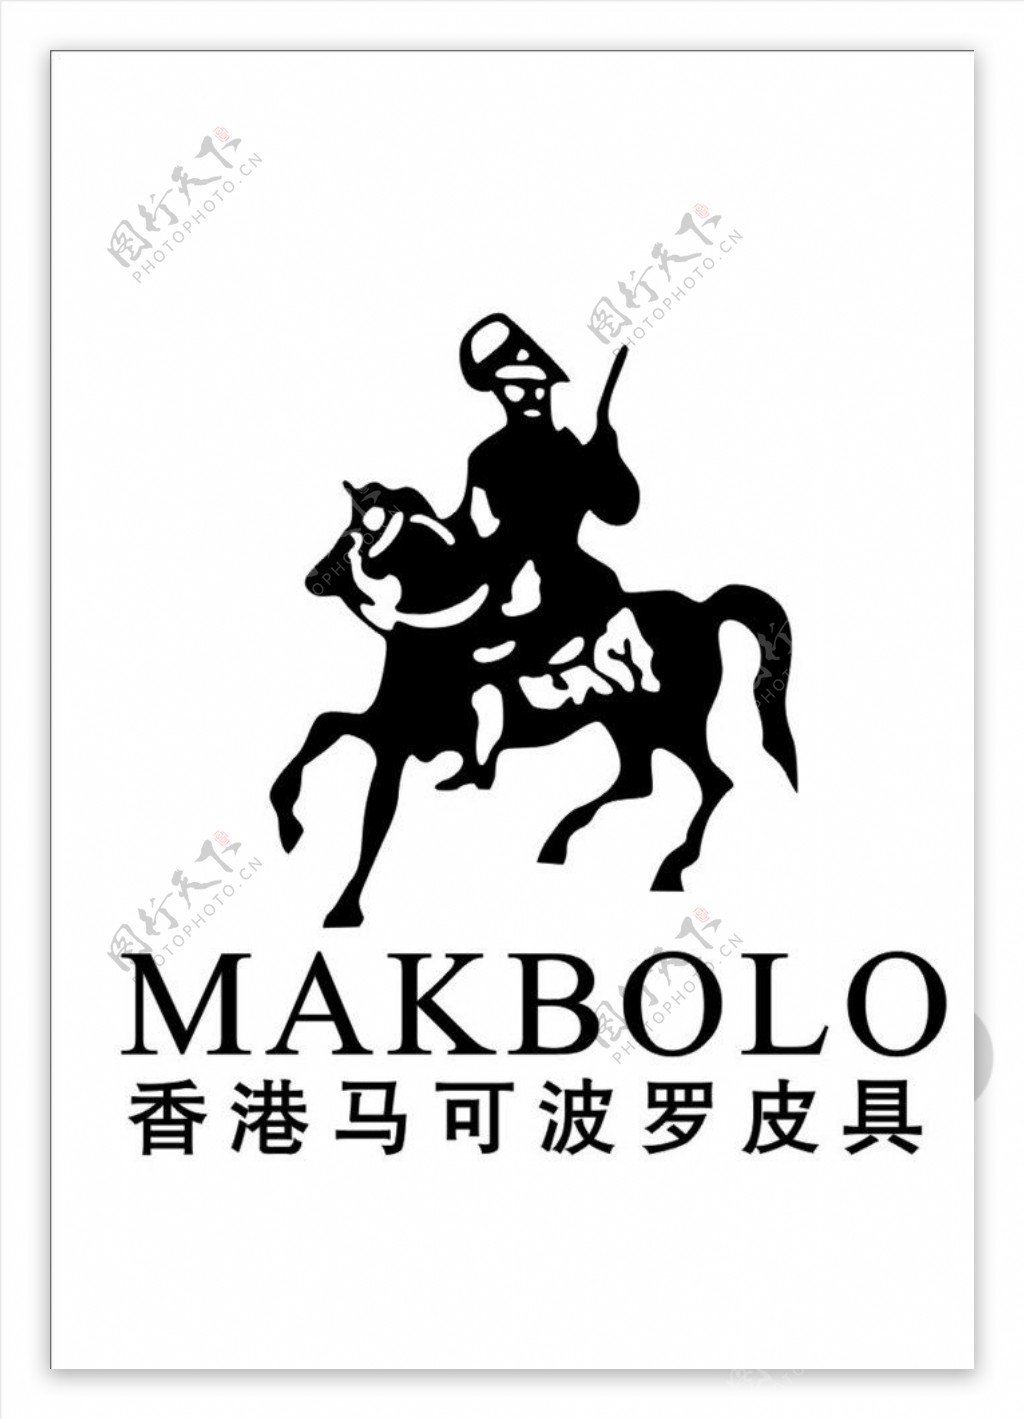 马可波罗皮具logo图片